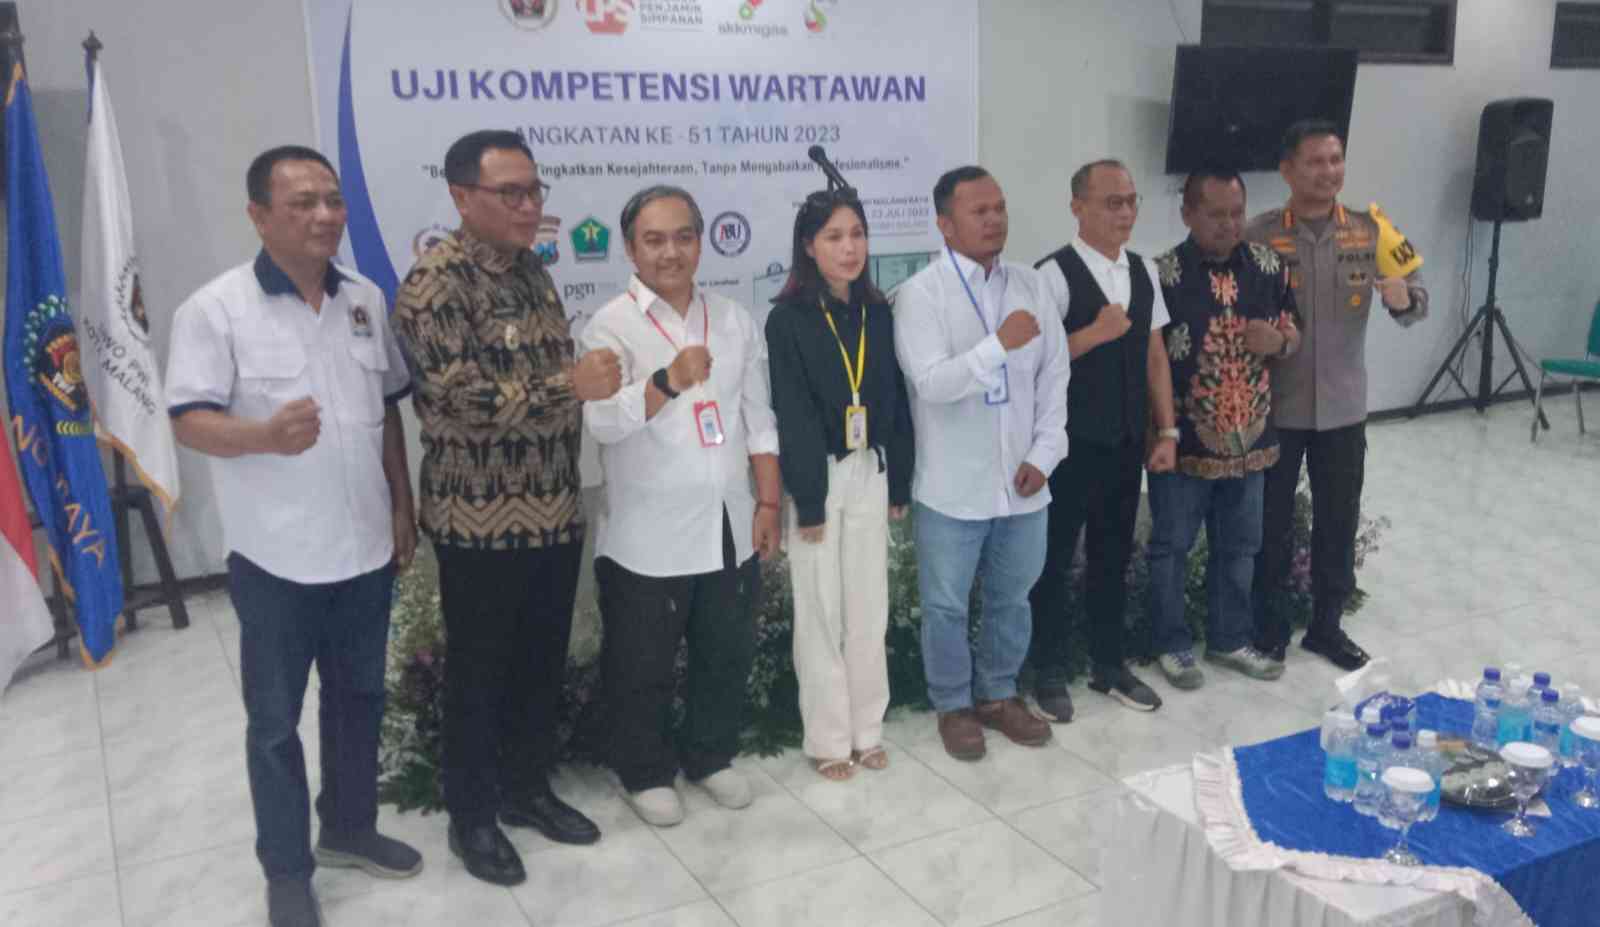 Resmi Dibuka, 36 Wartawan Siap Mengikuti Uji Kompetensi di Malang